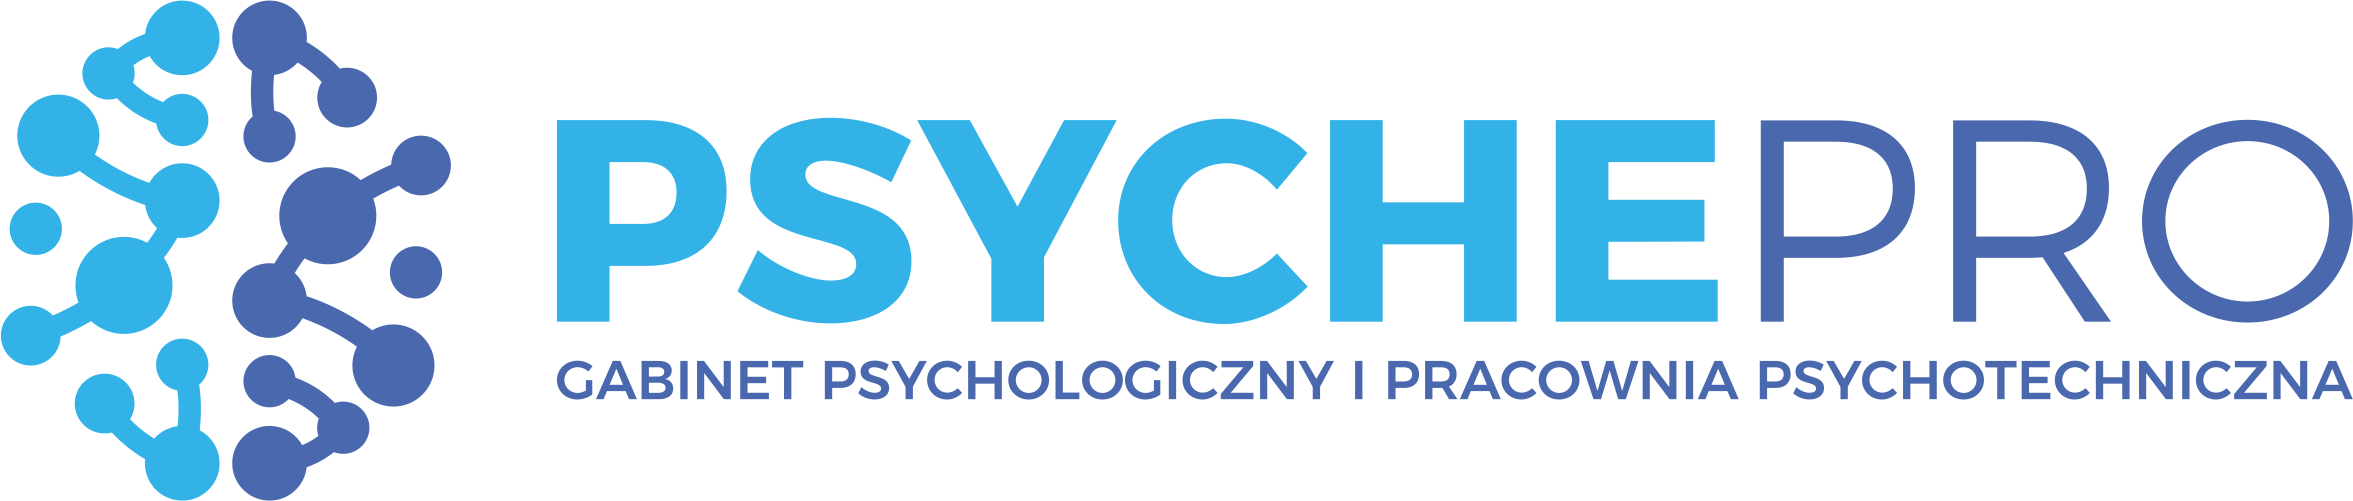 PsychePRO – Gabinet Psychologiczny i Pracownia Psychotechniczna